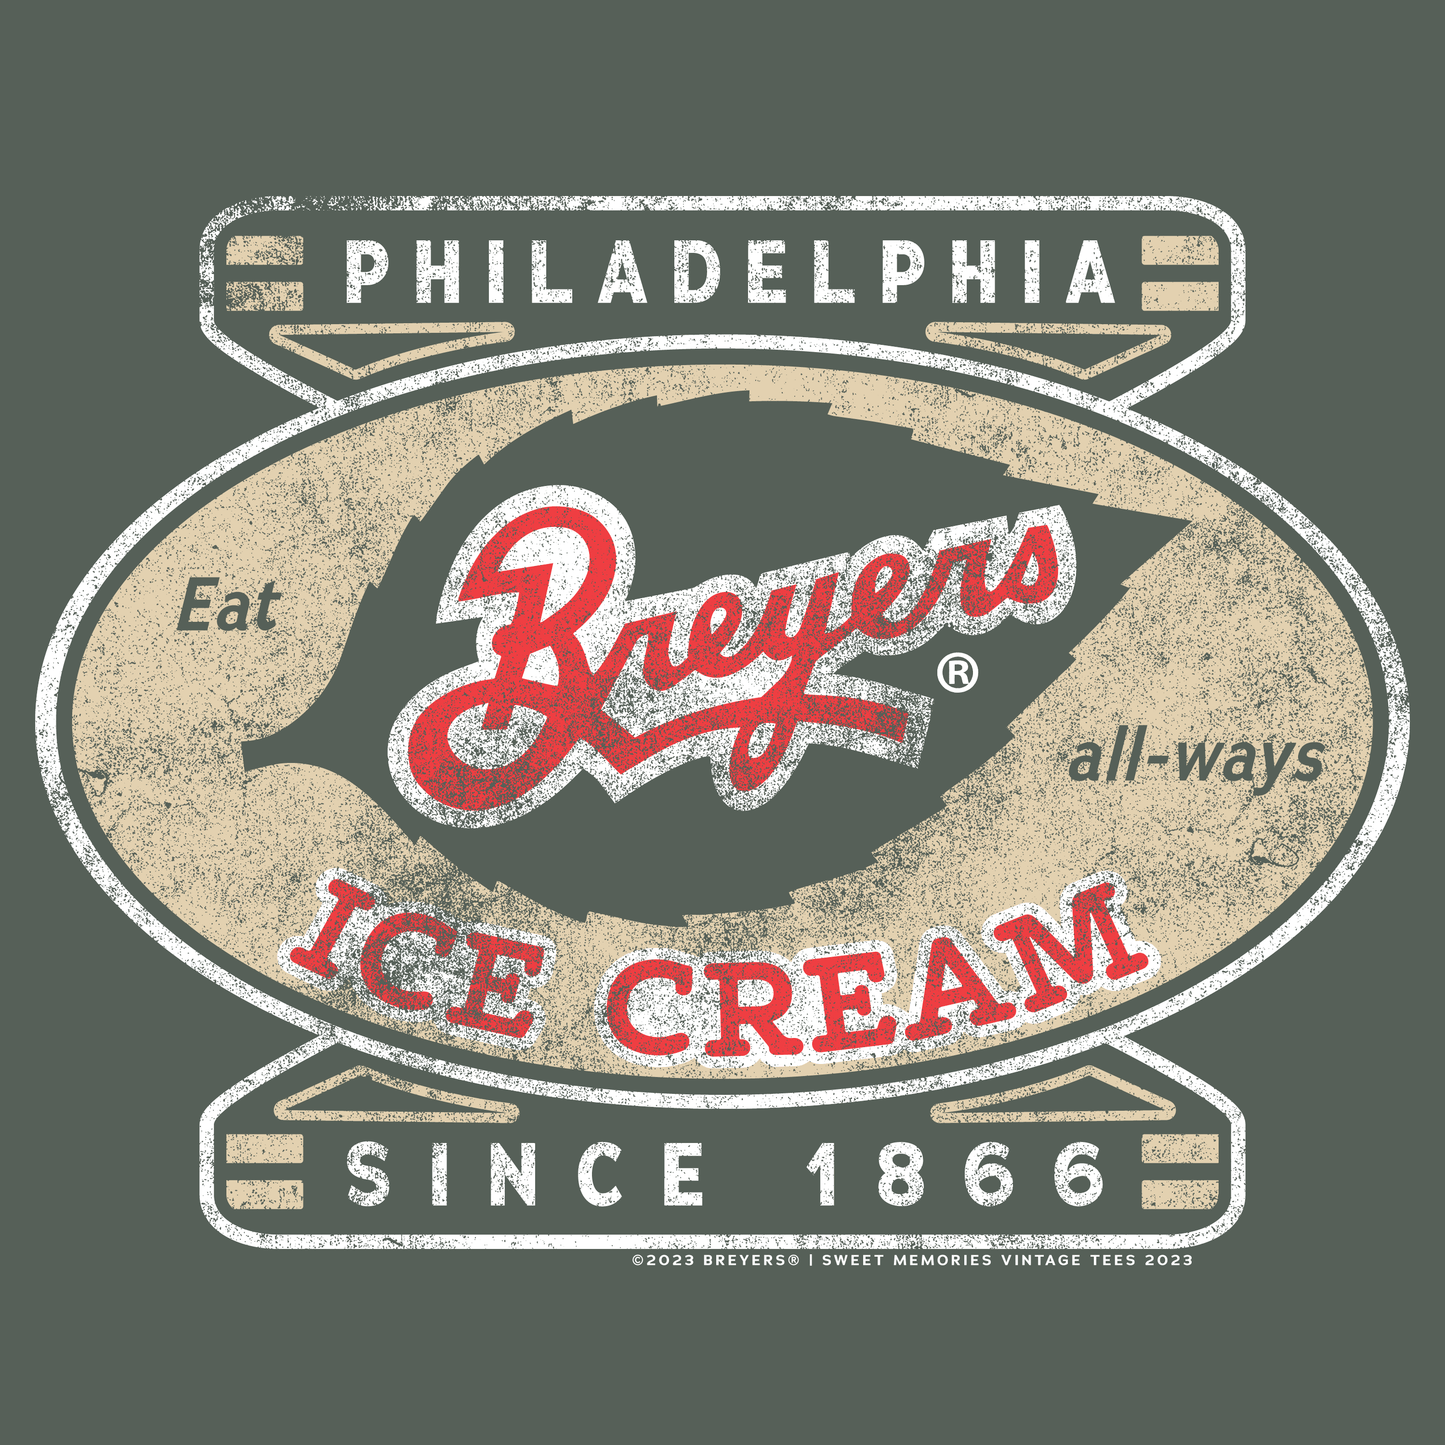 Since 1866 Vintage Breyers Ice Cream Unisex Tee